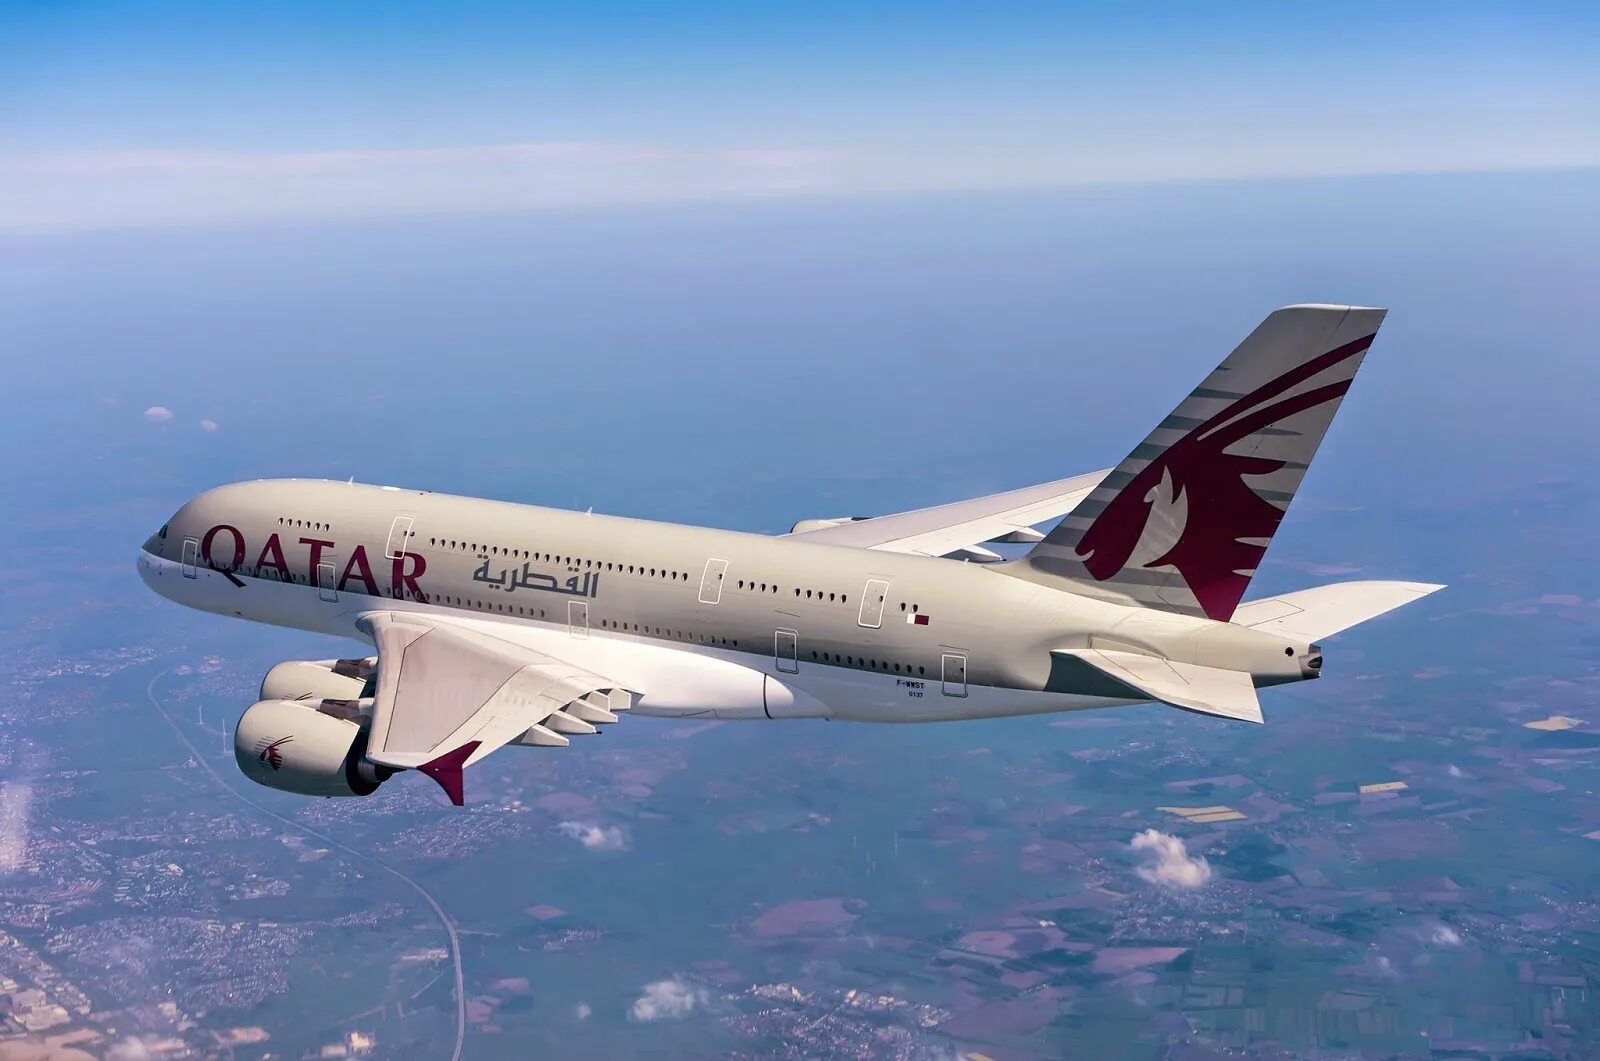 Катар дав. Катар Эйрлайнс самолеты. Самолет Катар Эйрвейз. Qatar Airways a380. Доха Катар авиакомпания.